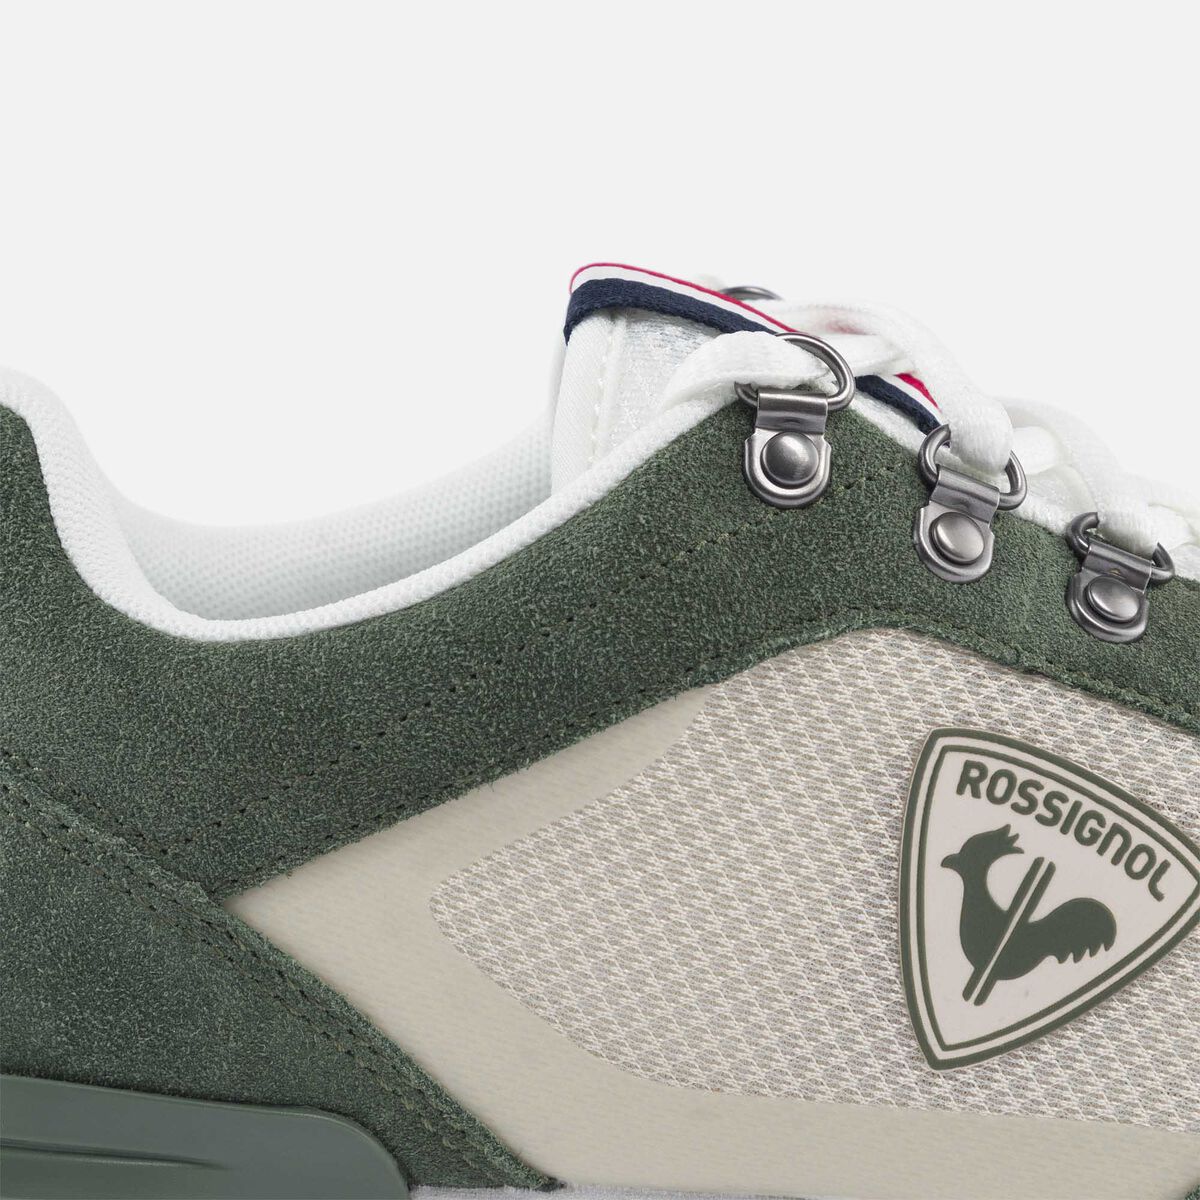 Men's Heritage Special green sneakers